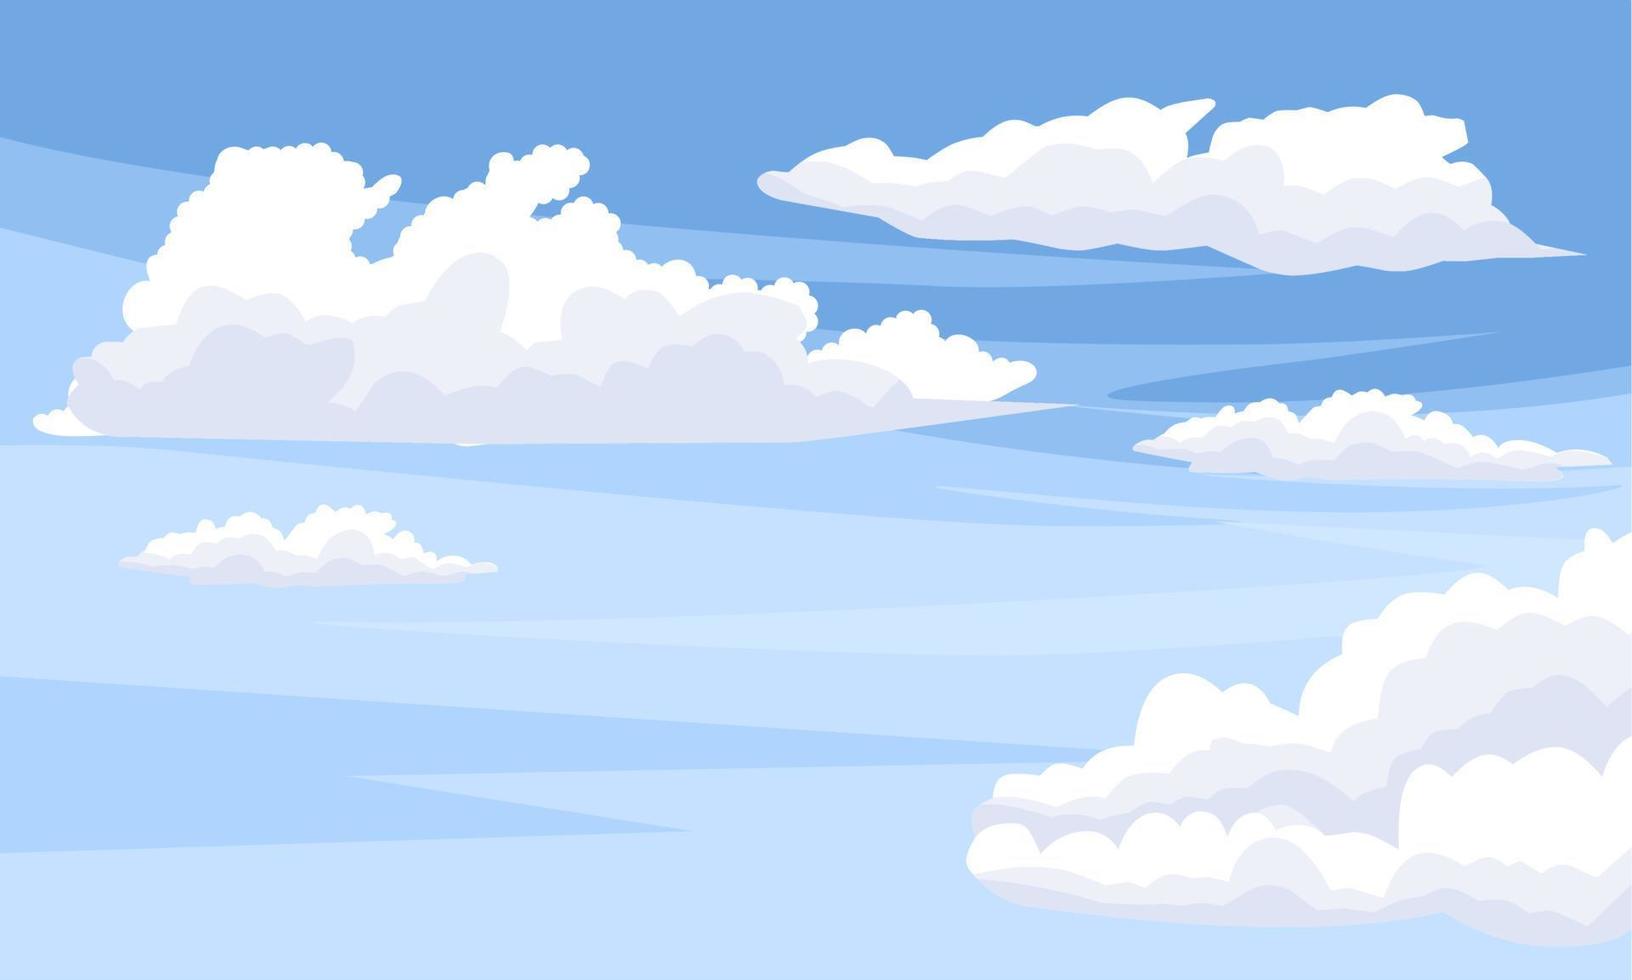 illustrazione vettoriale, cielo blu con nuvole bianche, come immagine di sfondo o banner, giornata internazionale dell'aria pulita per i cieli blu. vettore